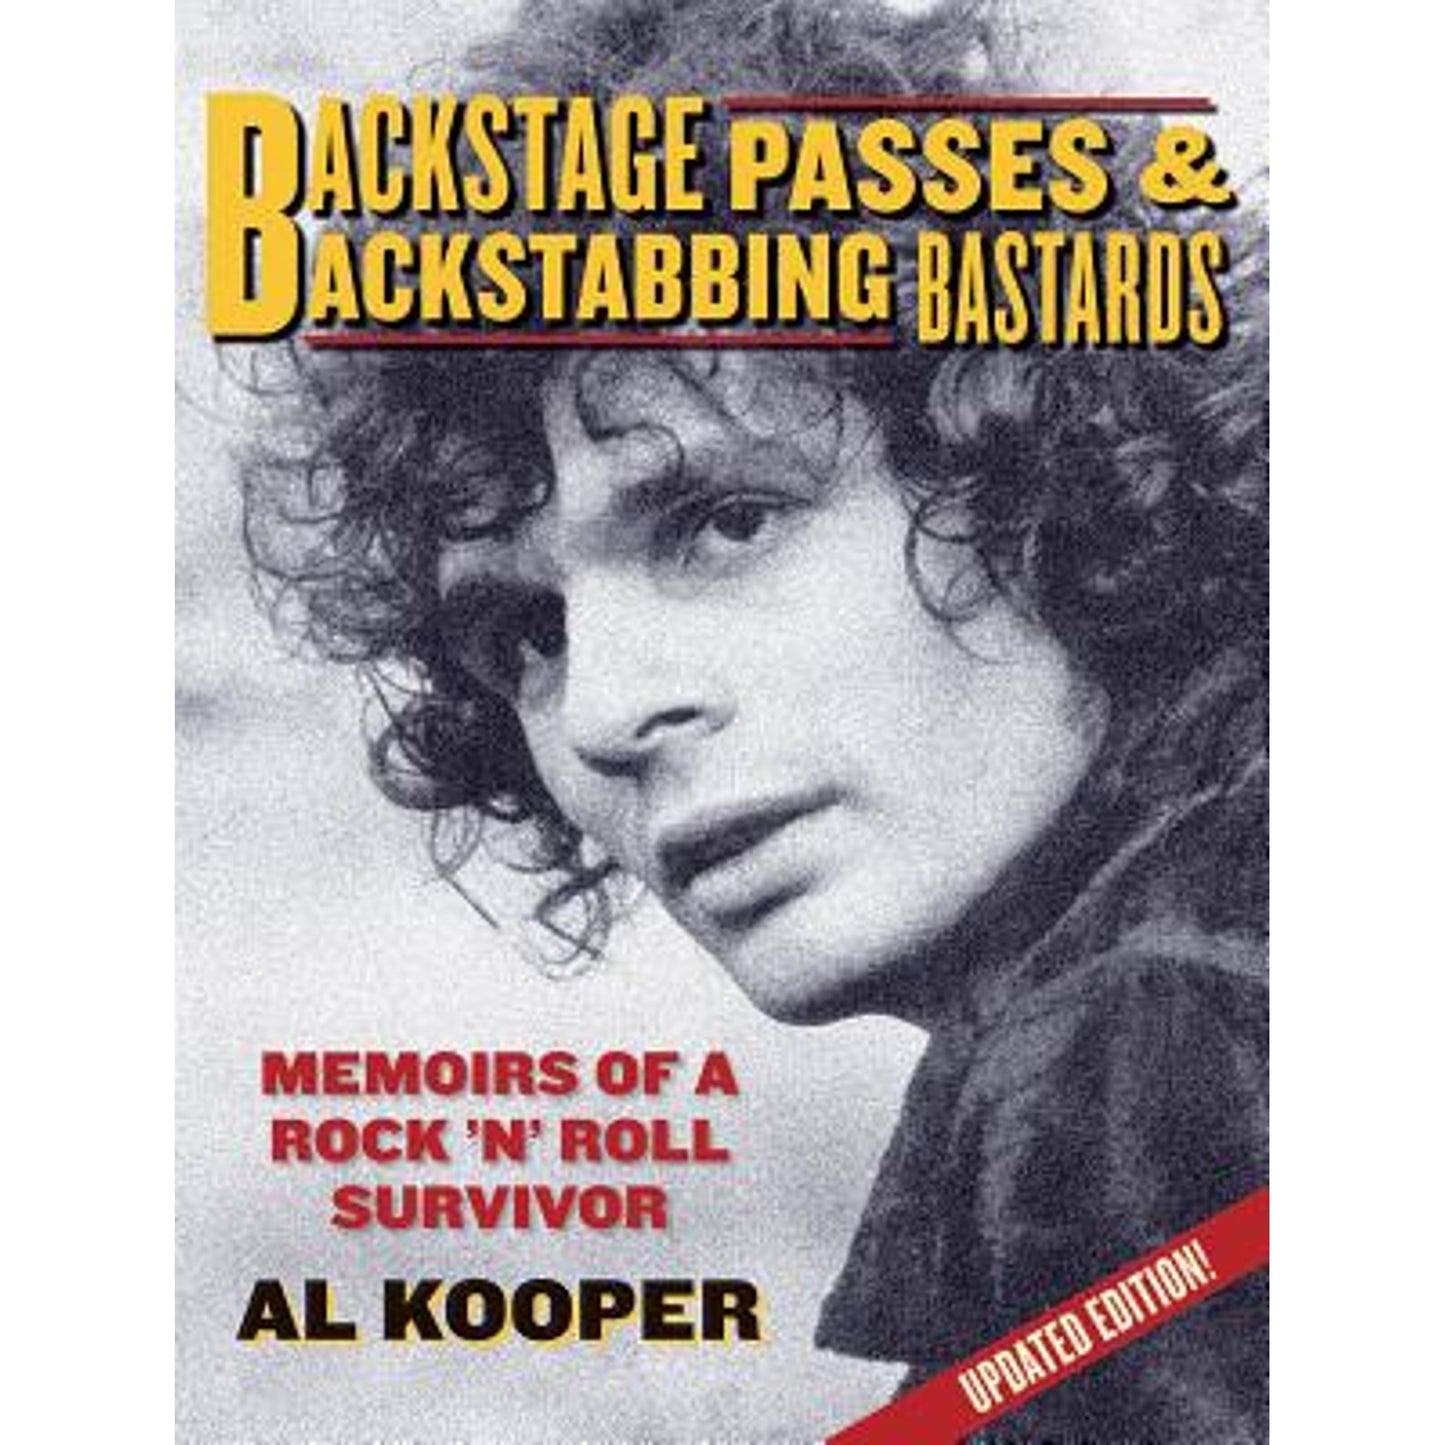 AL KOOPER - BACKSTAGE PASSES AND BACKSTABBING BASTARDS: MEMOIRS OF A ROCK 'N' ROLL SURVIVOR - PAPERBACK - BOOK